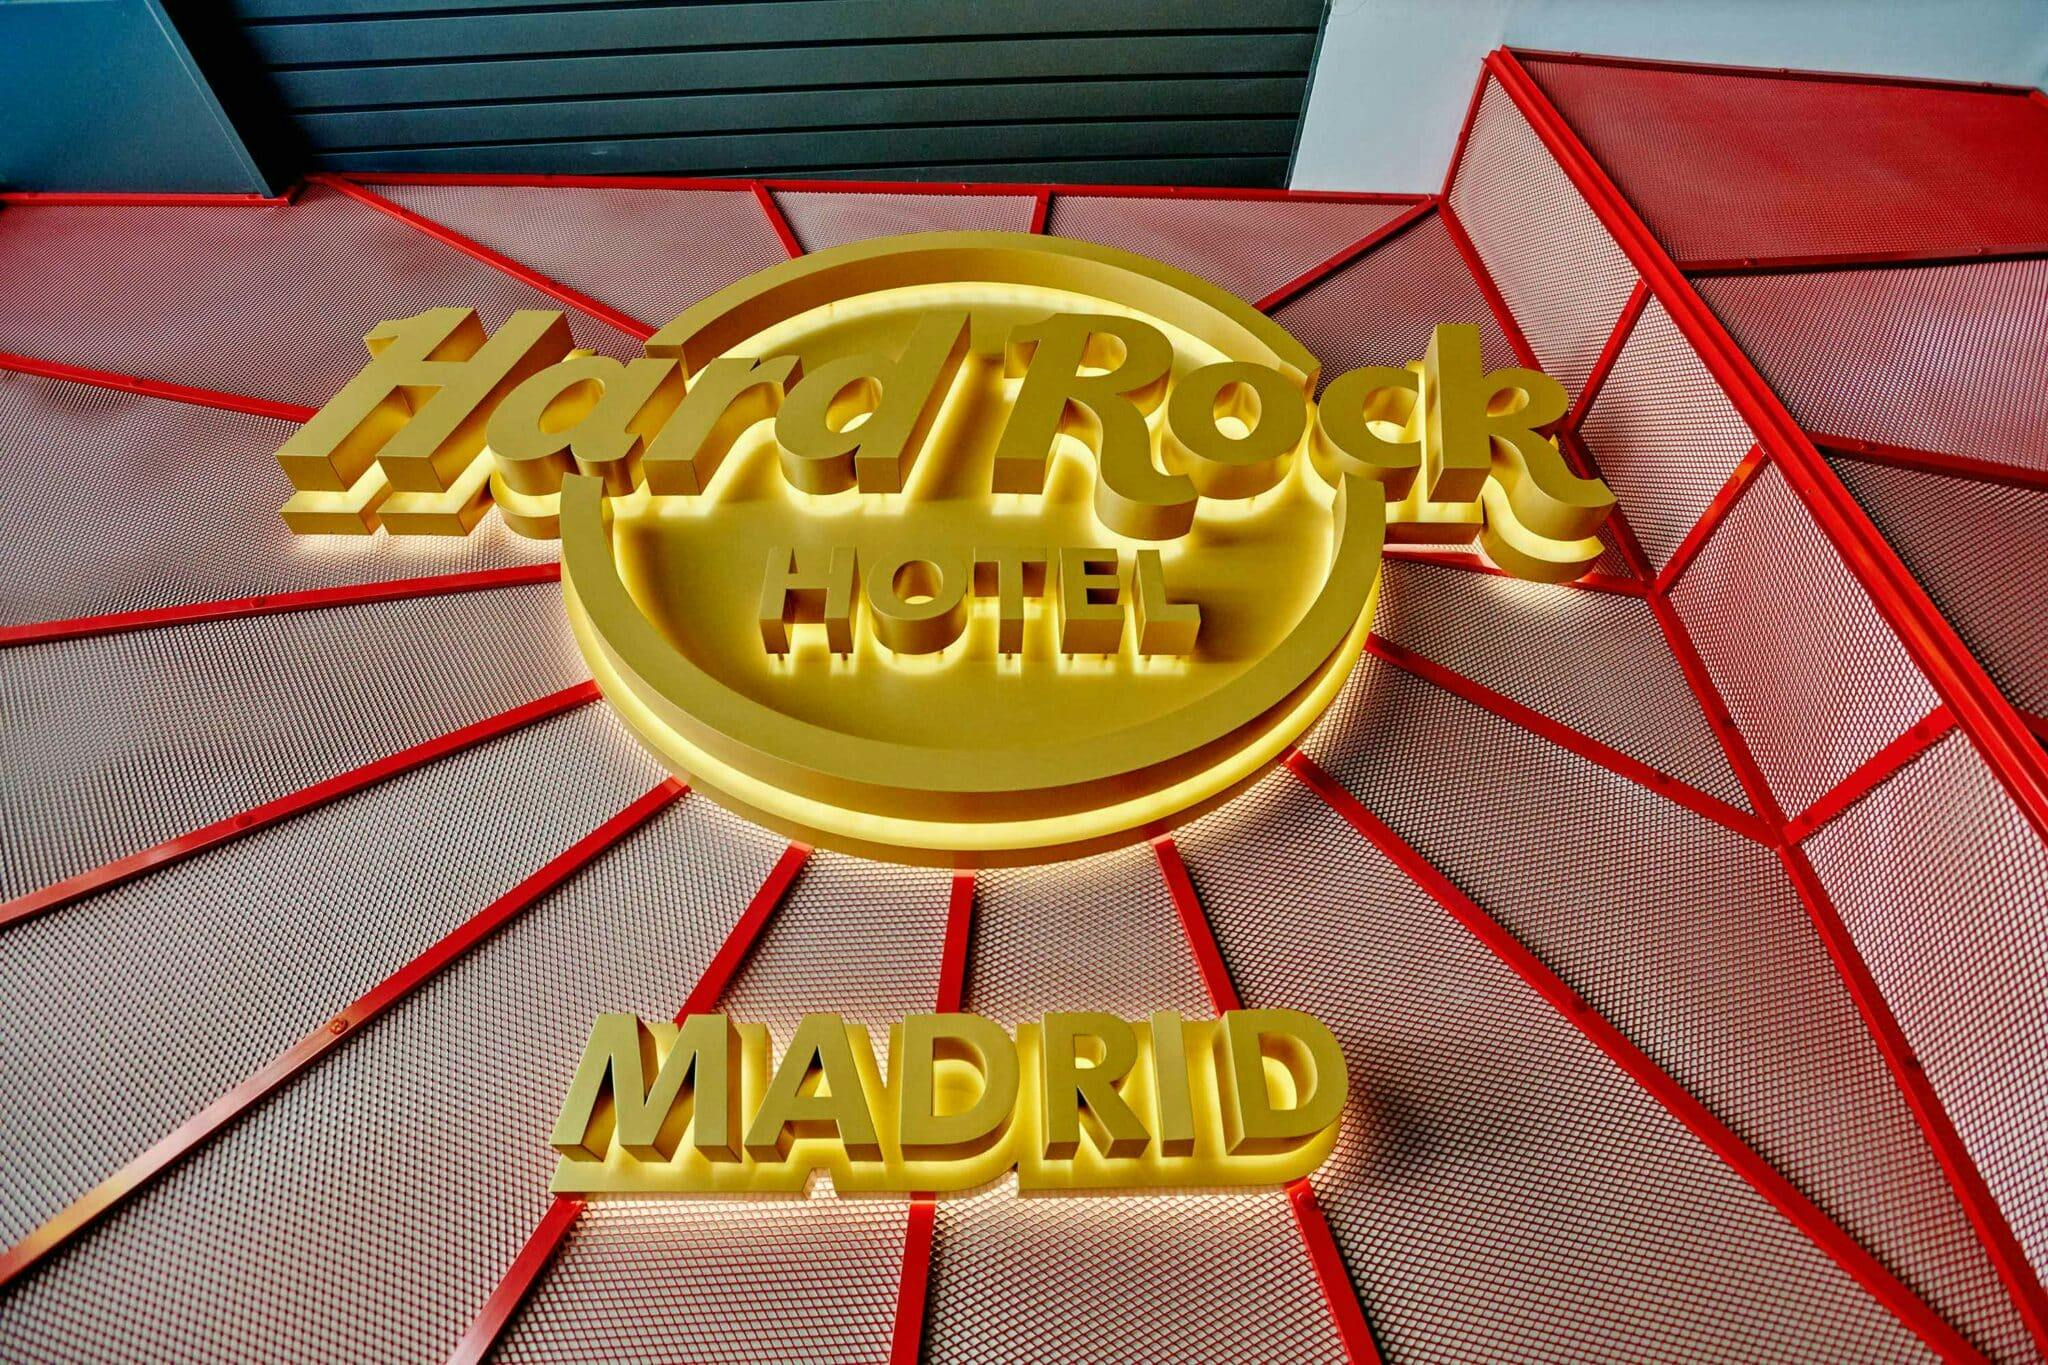 Numéro d'image 53 de la section actuelle de Hard Rock Hotel Madrid de Cosentino France